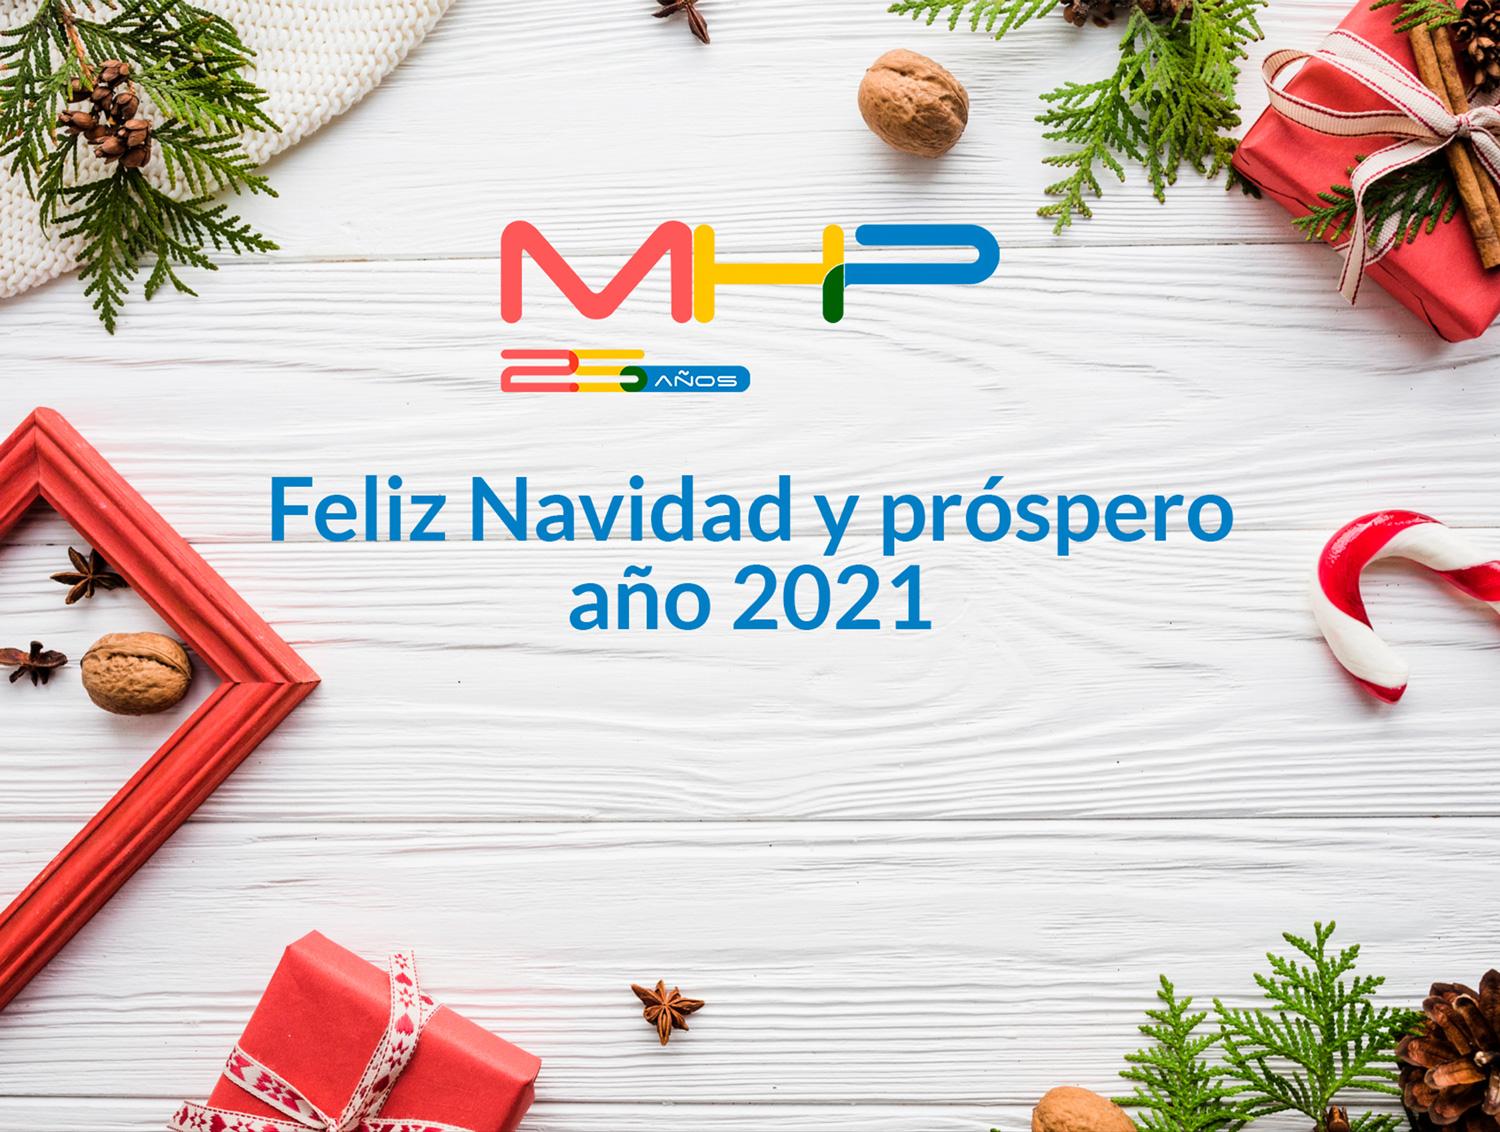 MHP te desea Feliz Navidad y próspero Año 2021